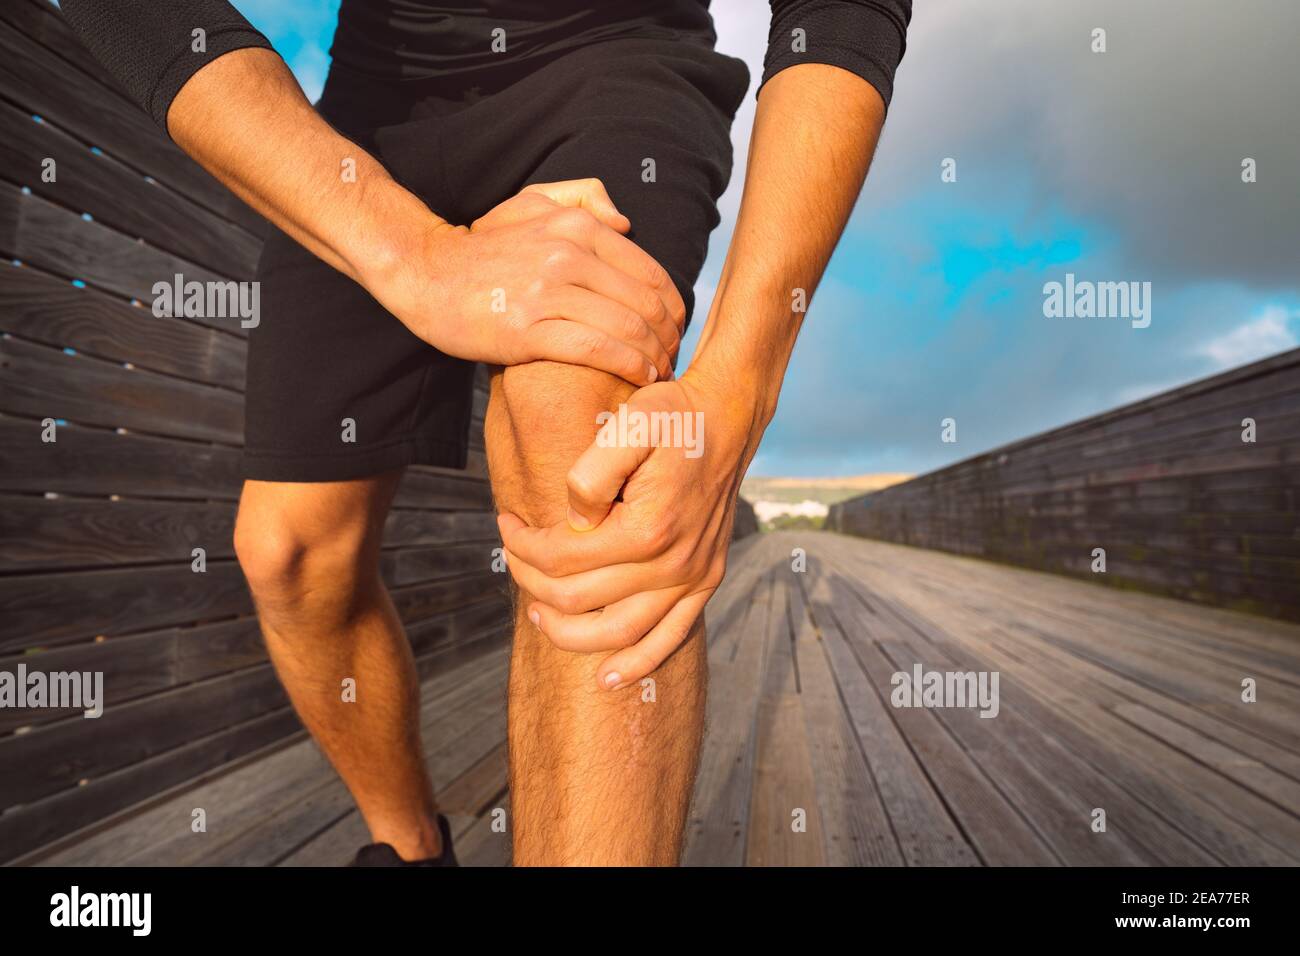 Uomo runner che tiene il ginocchio doloroso a causa di una lesione. Lesioni da allenamento e esercizio fisico Foto Stock